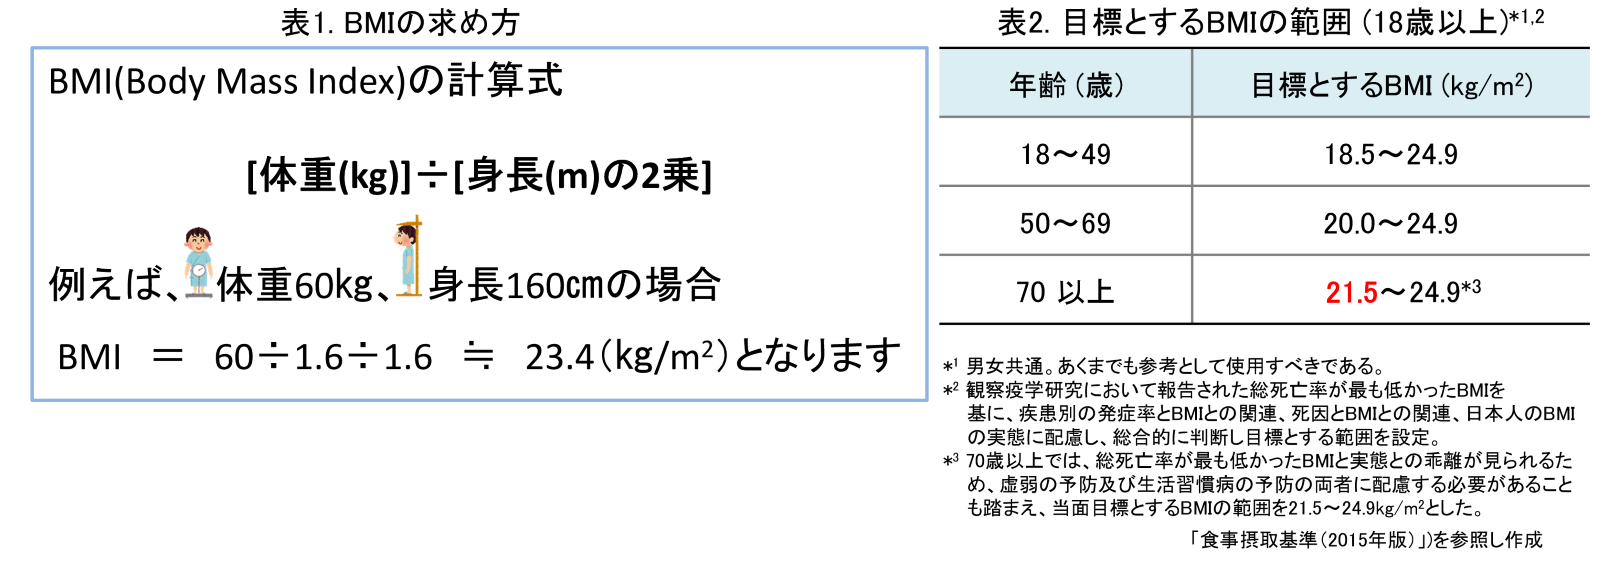 表1はBMIの計算式、体重を身長を2乗したもので割るを示している。表2は、18歳以上の目標とするBMI値を示しており、18歳から49歳は18.5から24.9、50歳から69歳は20.0から24.9、70歳以上は21.5から24.9となっている。